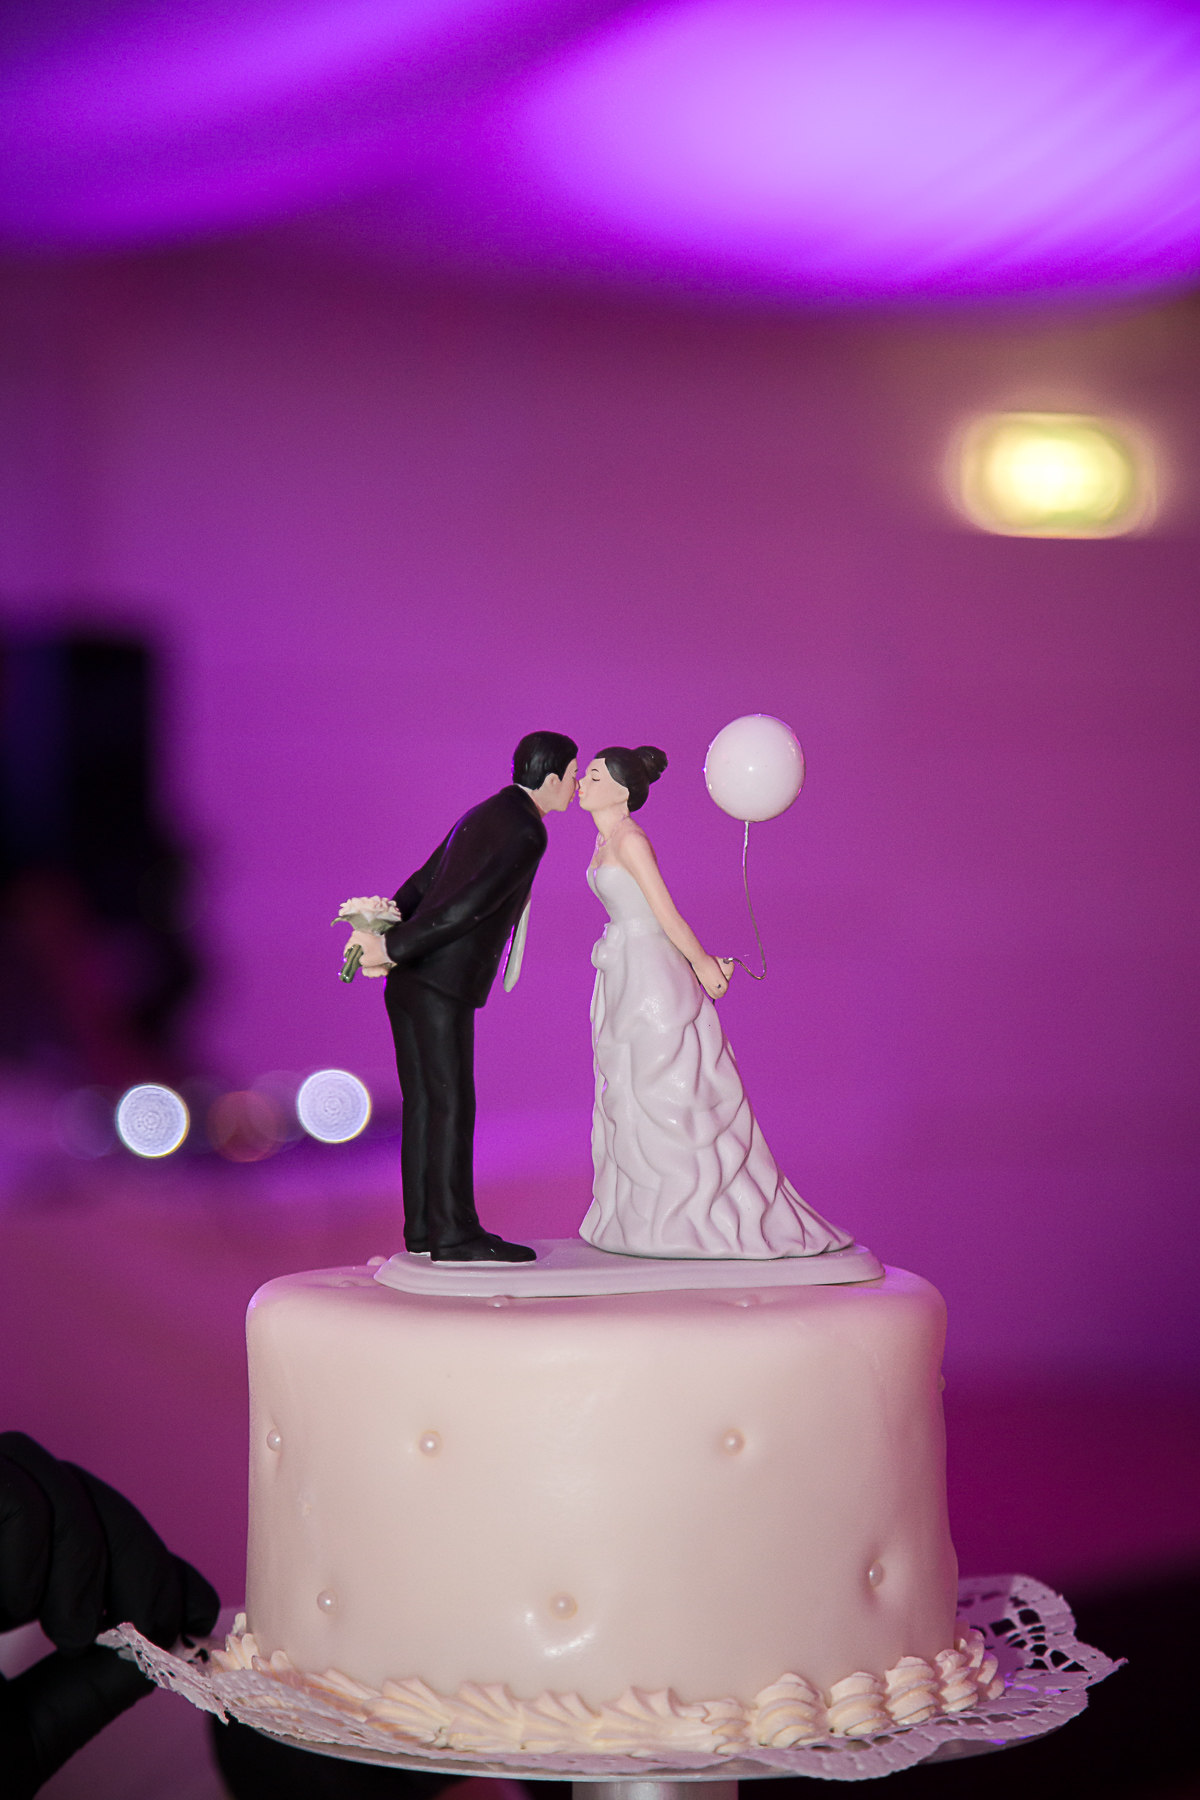 Eine Miniaturfigur in Form eines küssenden Brautpaars als Krönung der Hochzeitstorte